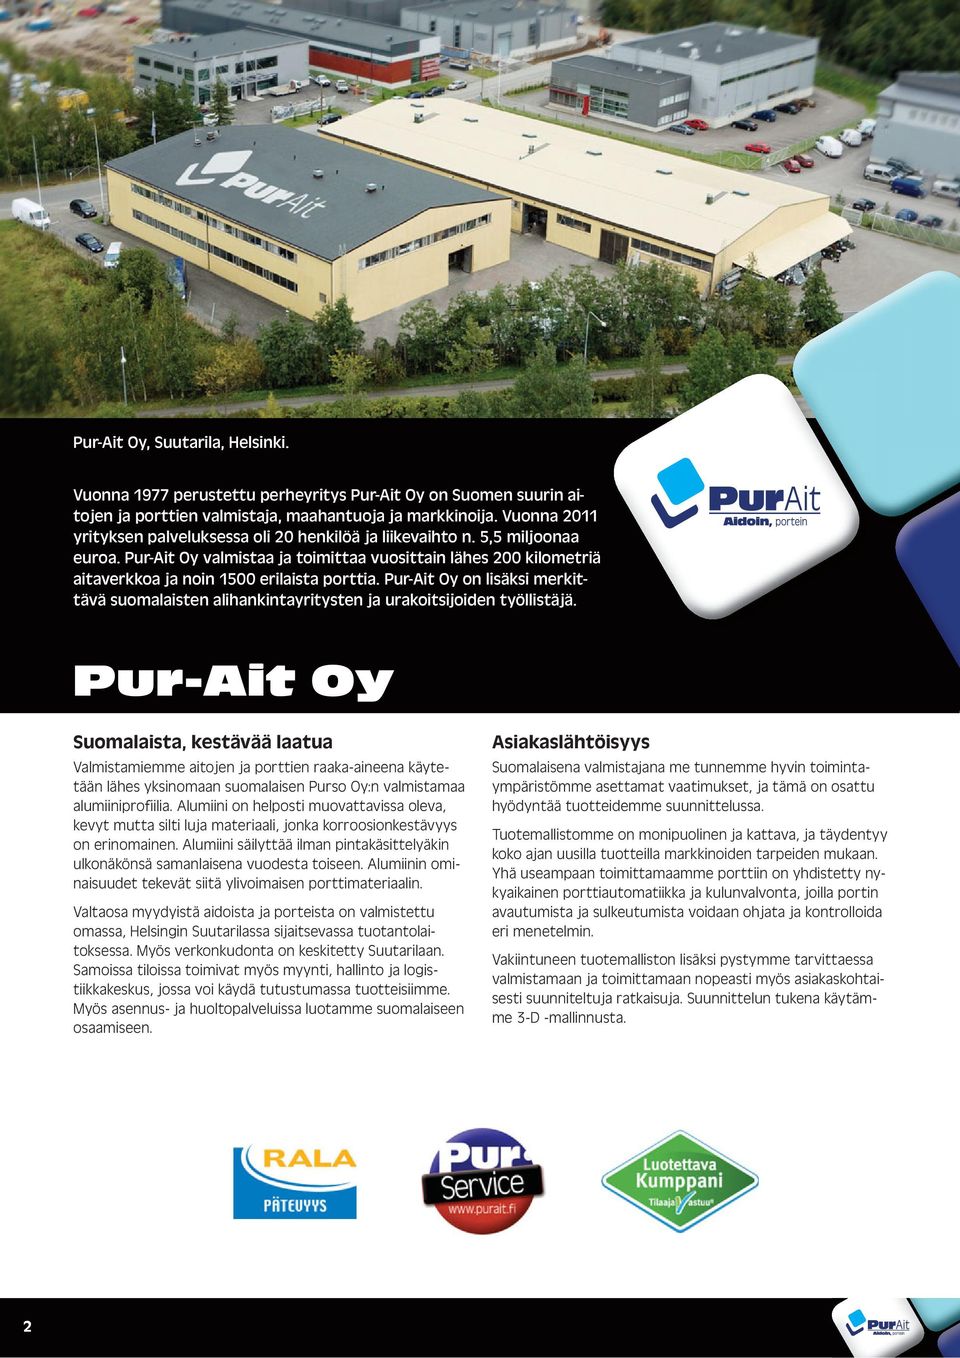 Pur-Ait Oy on lisäksi merkittävä suomalaisten alihankintayritysten ja urakoitsijoiden työllistäjä.